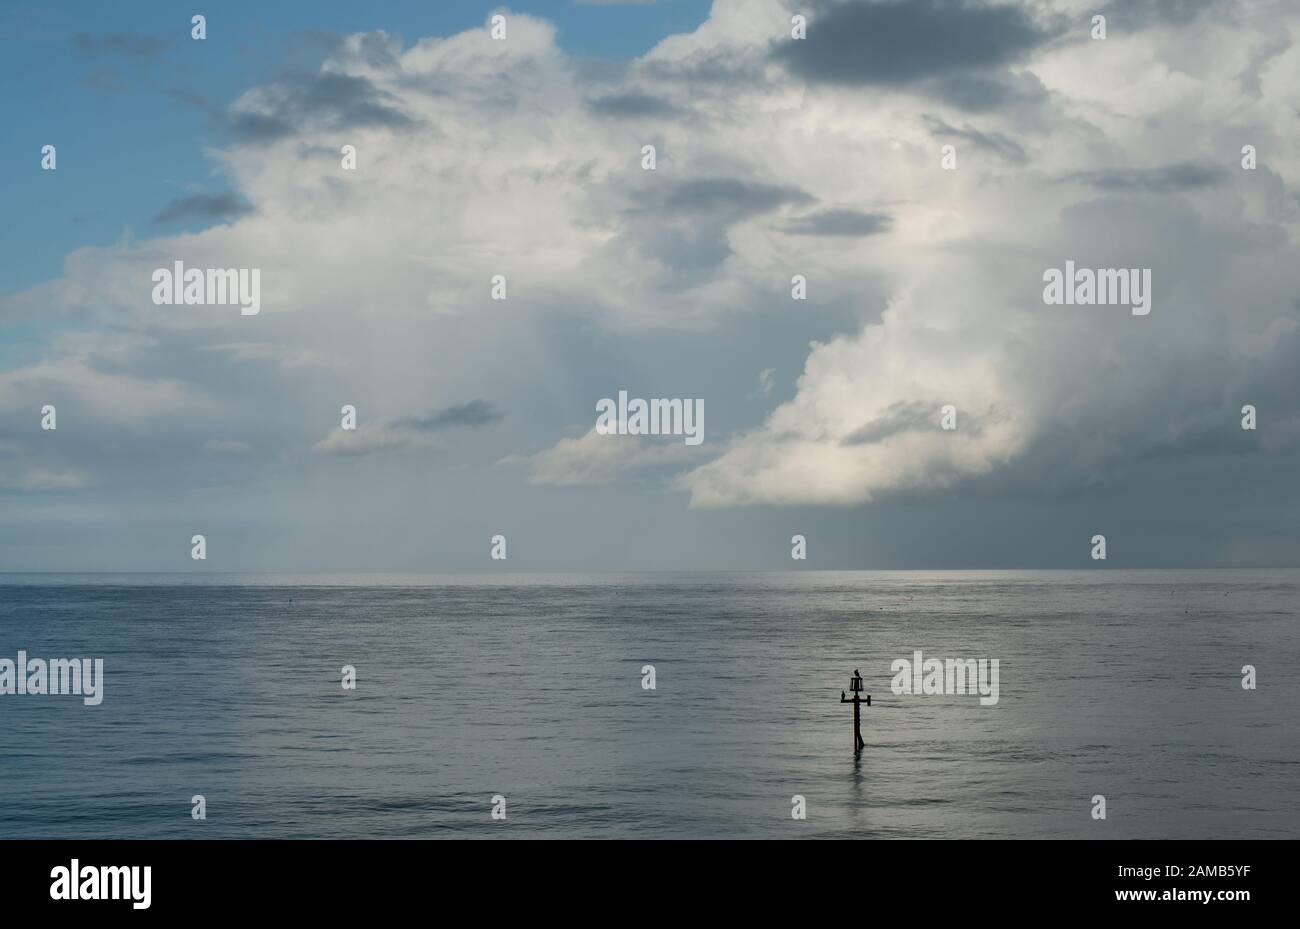 Eine klassische minimalistische Szene aus Meer, Horizont-blauem Himmel und sanft beweglichen Wolken ohne Ablenkungen, die in wunderschönem Licht gefangen sind Stockfoto